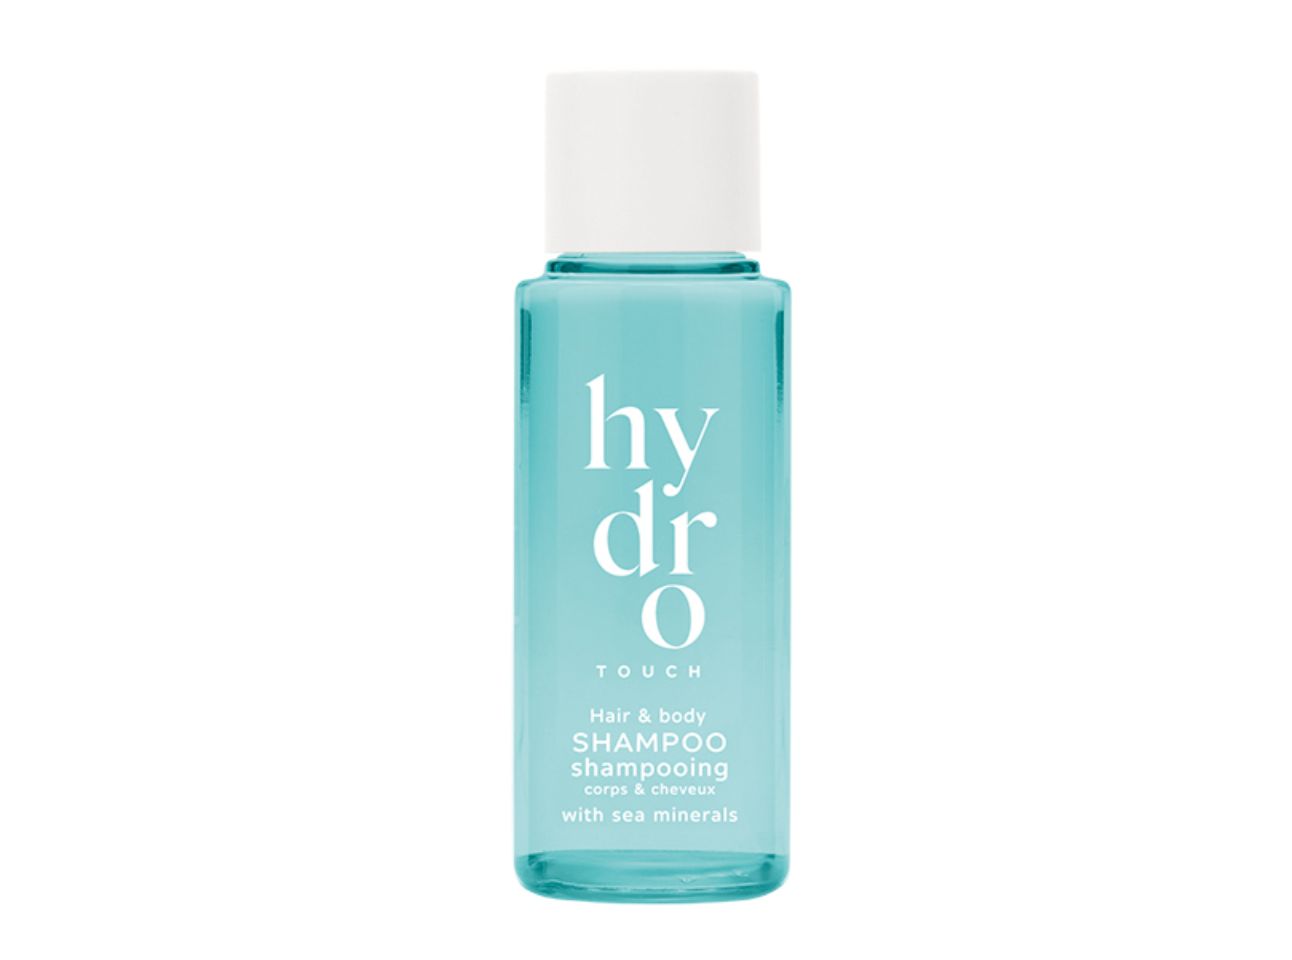 Hydro Touch 30ml Haar- & Körpershampoo im Flacon